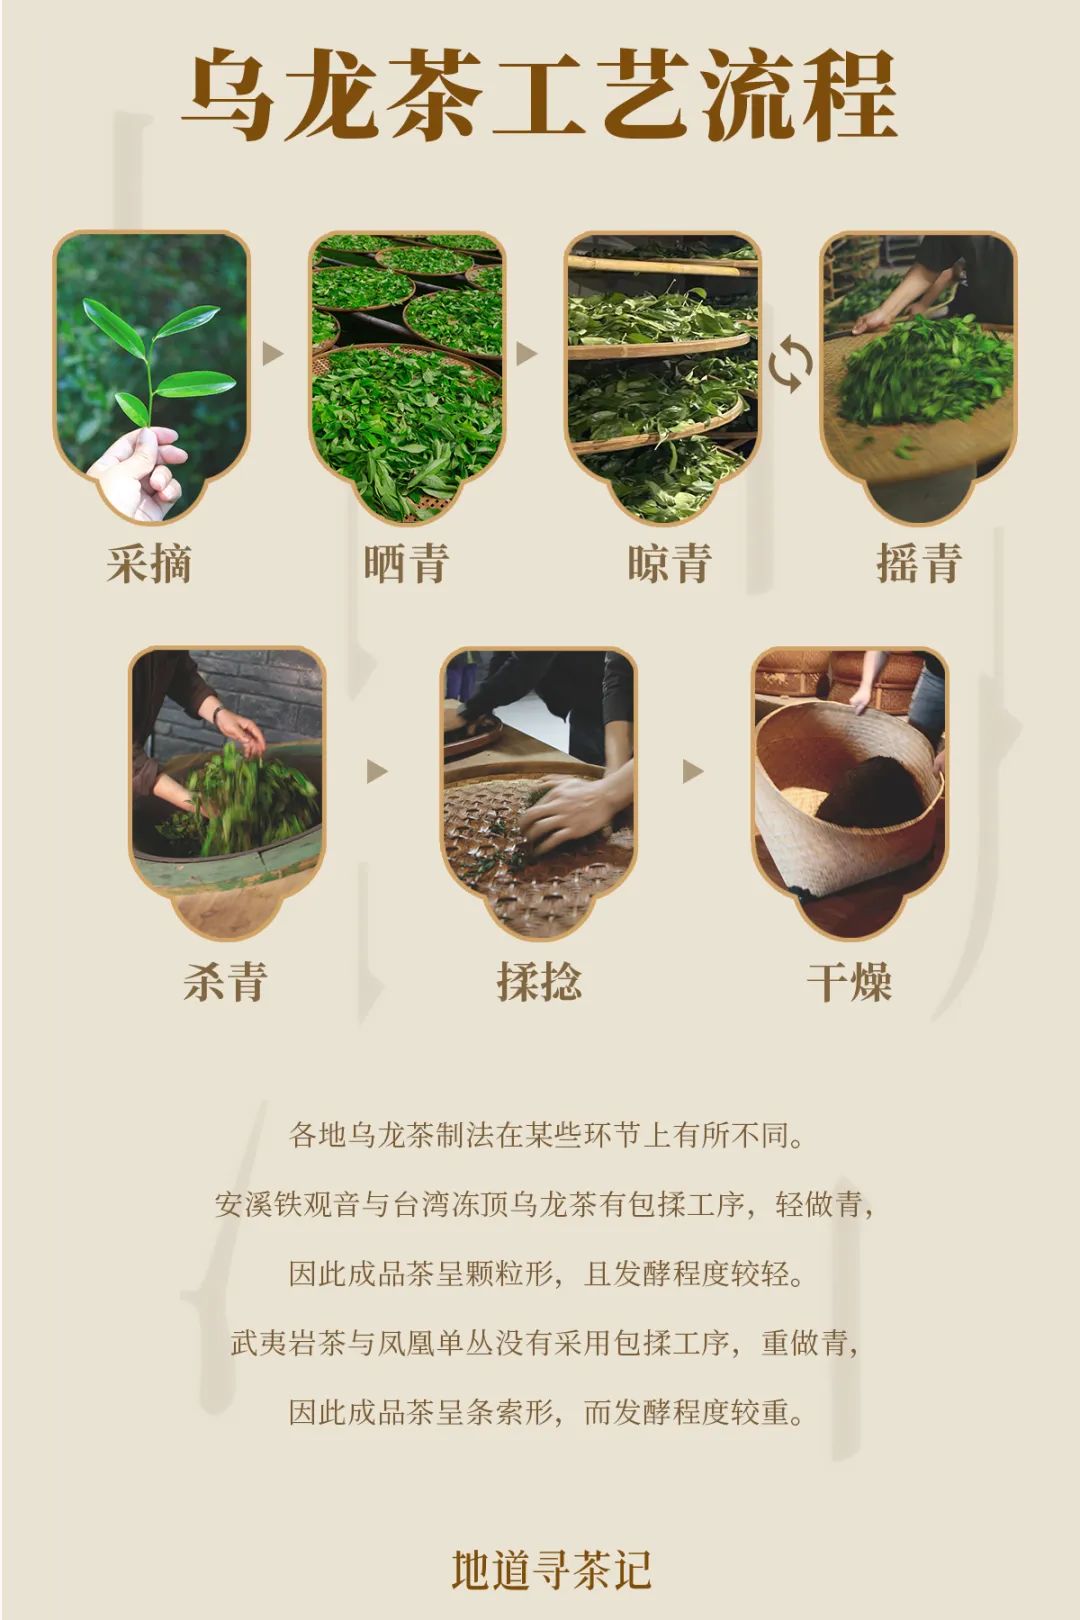 乌龙茶制作工艺流程设计/九阳乌龙茶制茶工艺各地都有细节上的区别,且